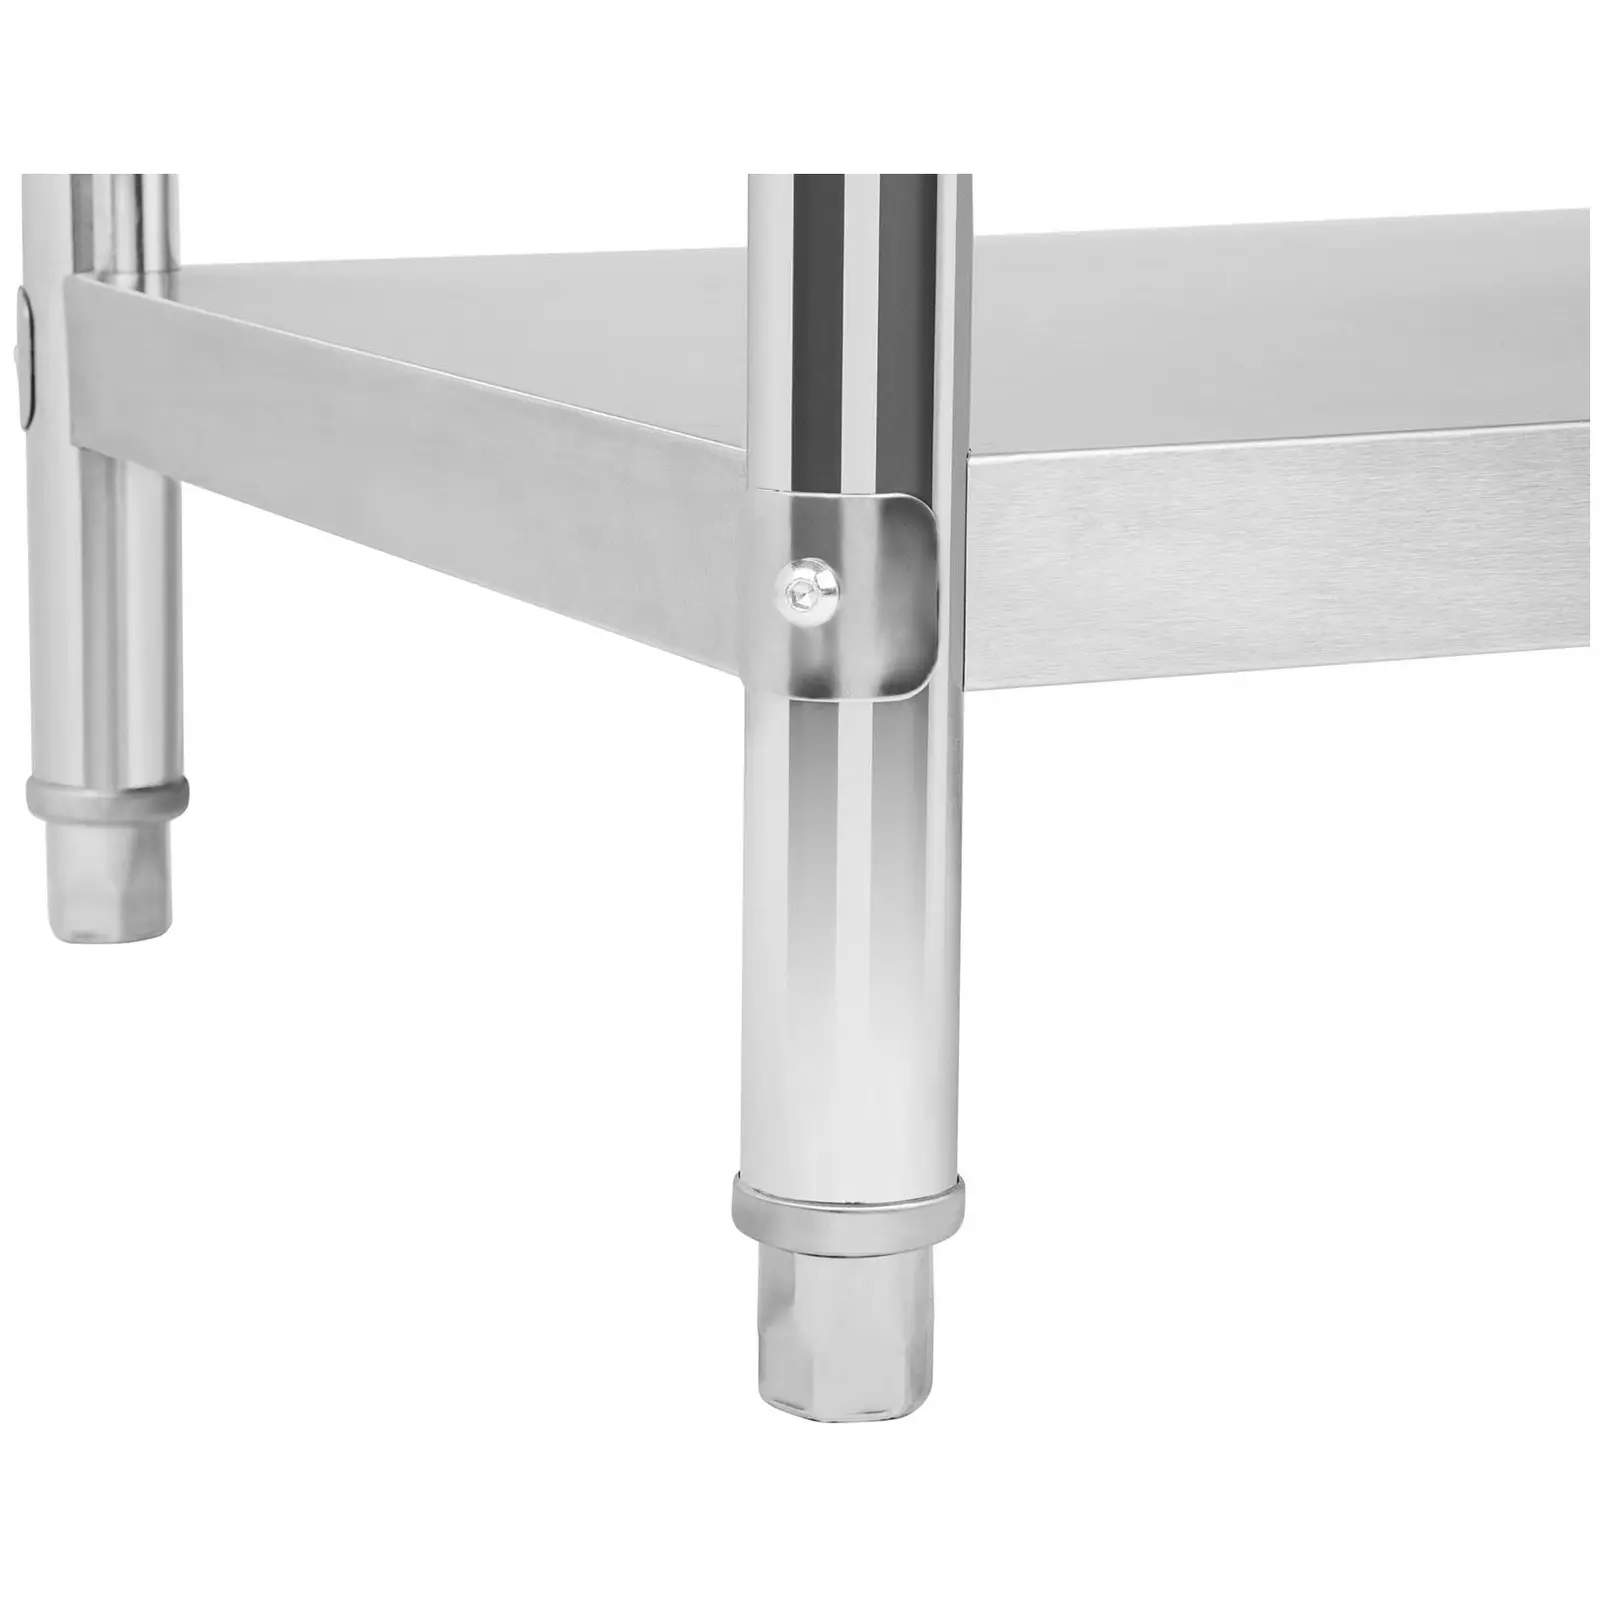 Pracovný stôl z ušľachtilej ocele - 150 x 60 cm - s lemom - 159 kg nosnosť